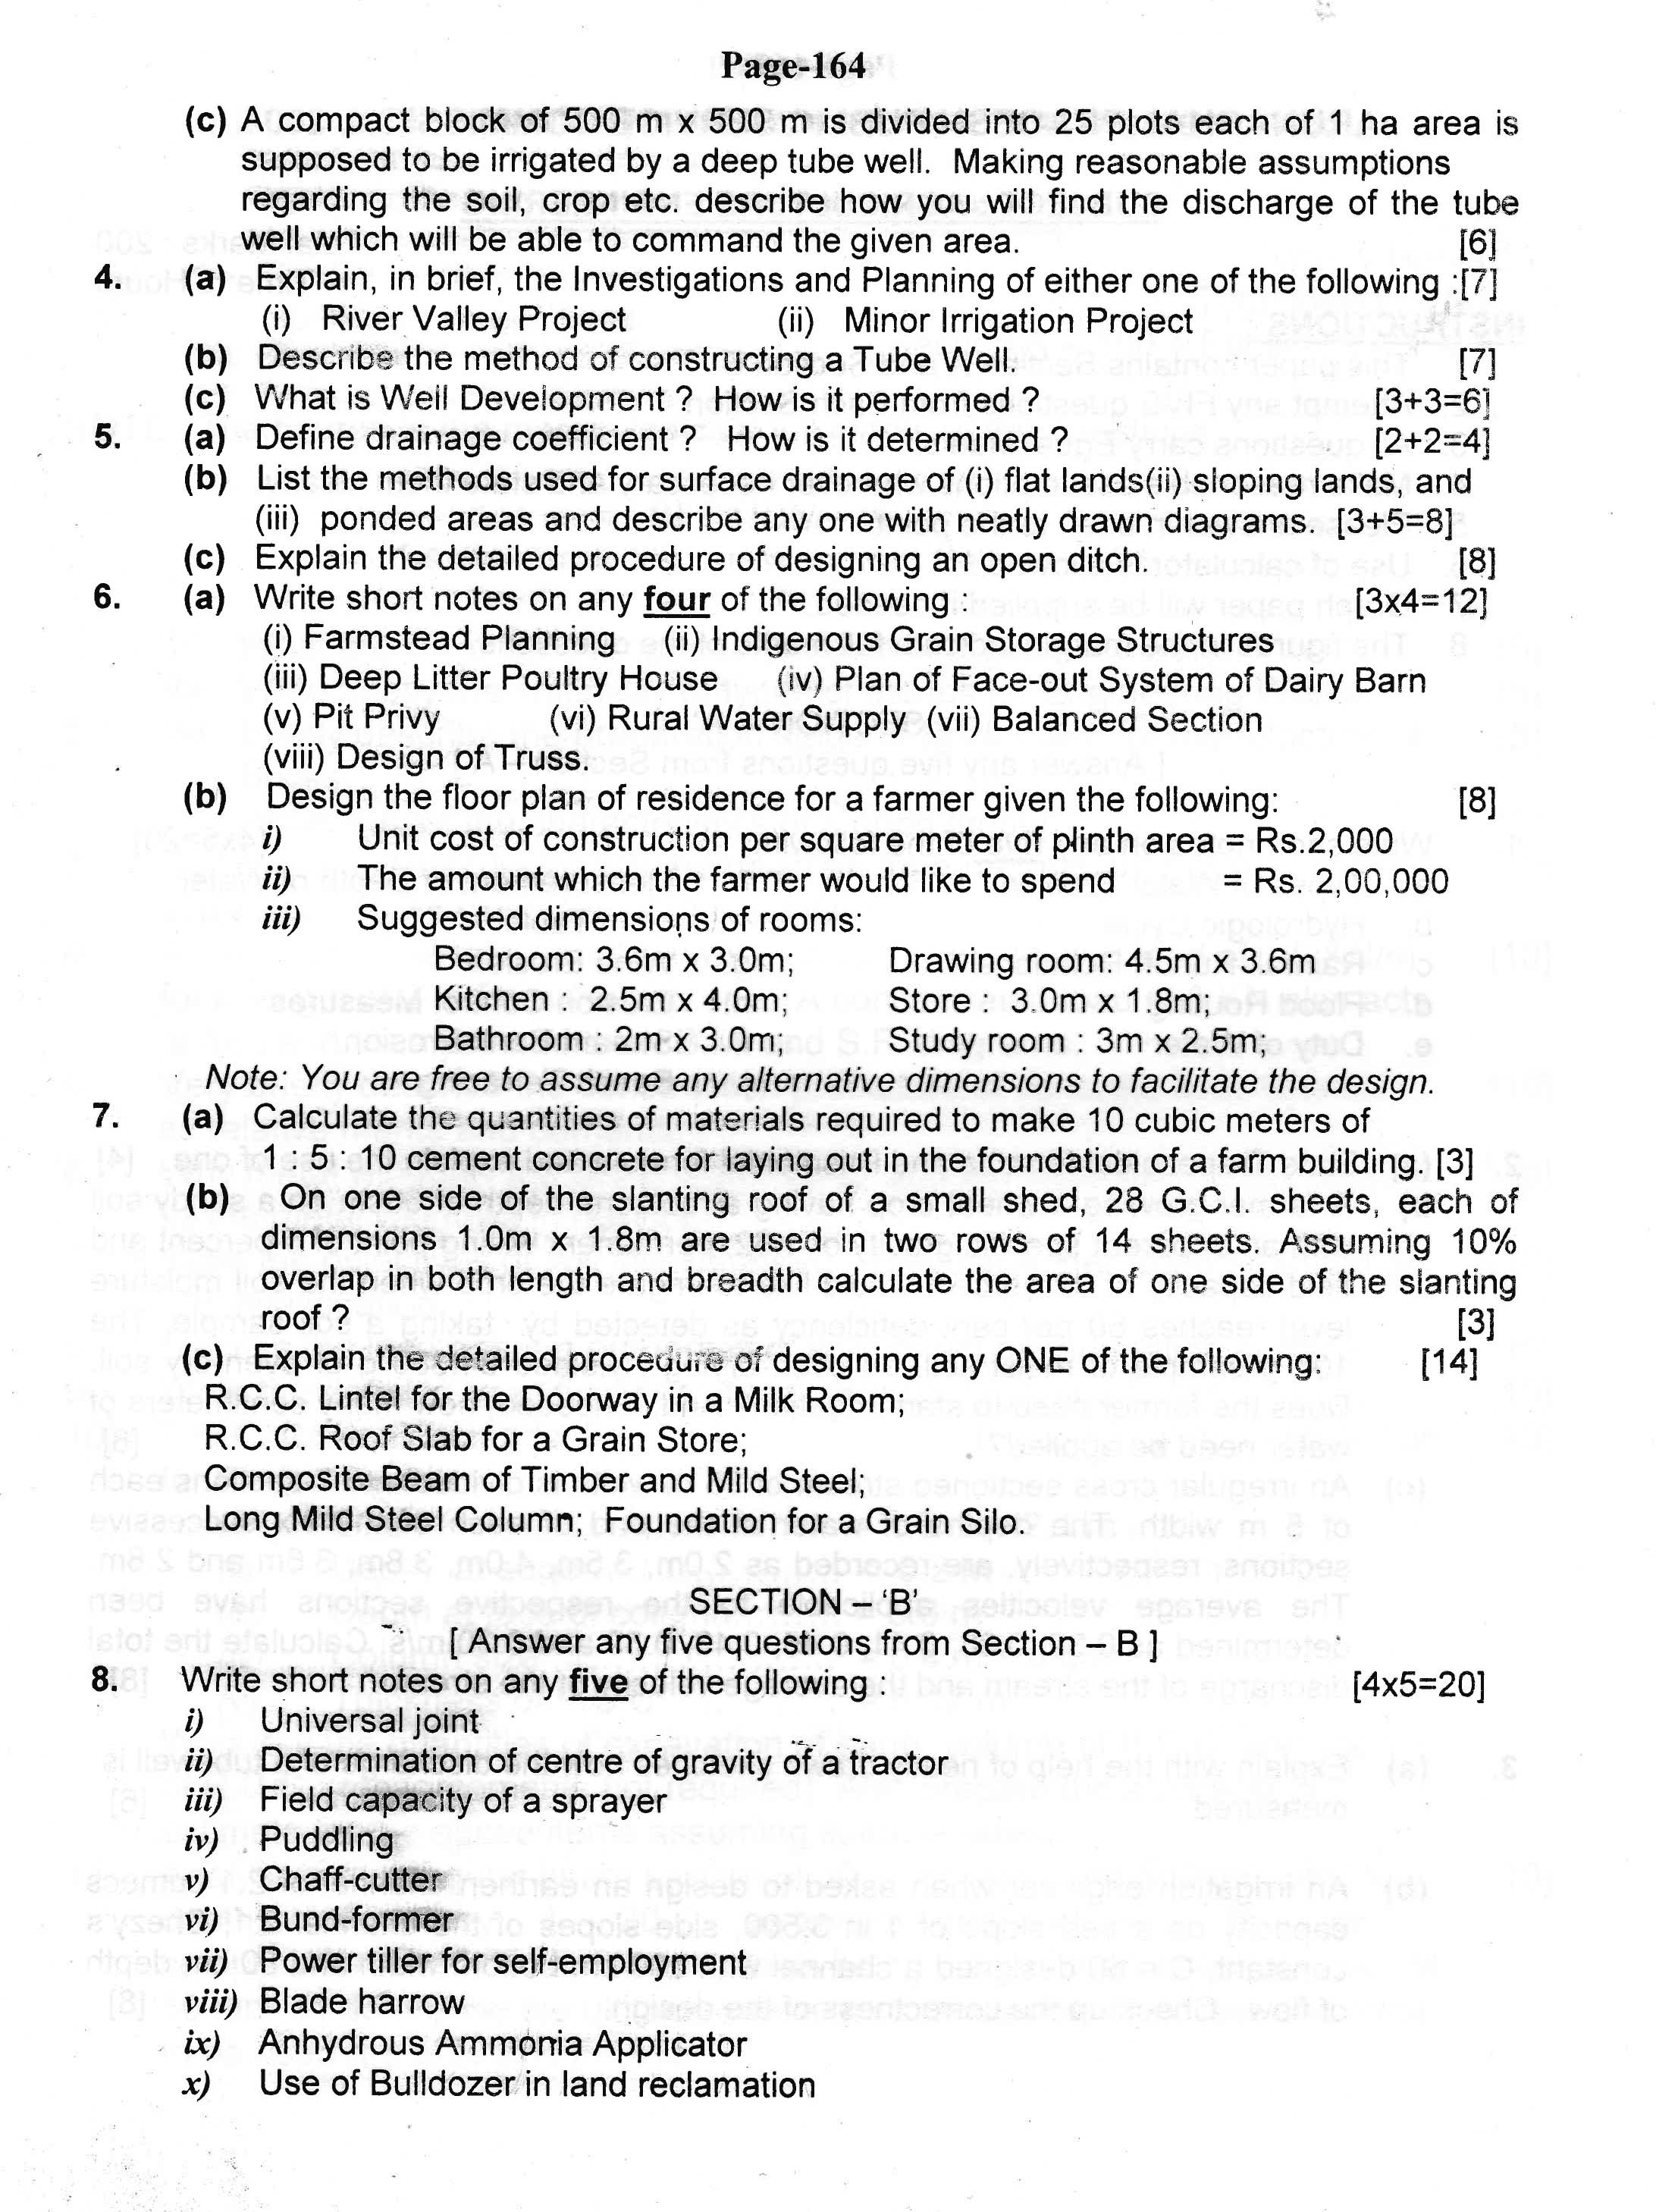 APPSC AE Civil Exam 2004 Agriculture Engineering 2